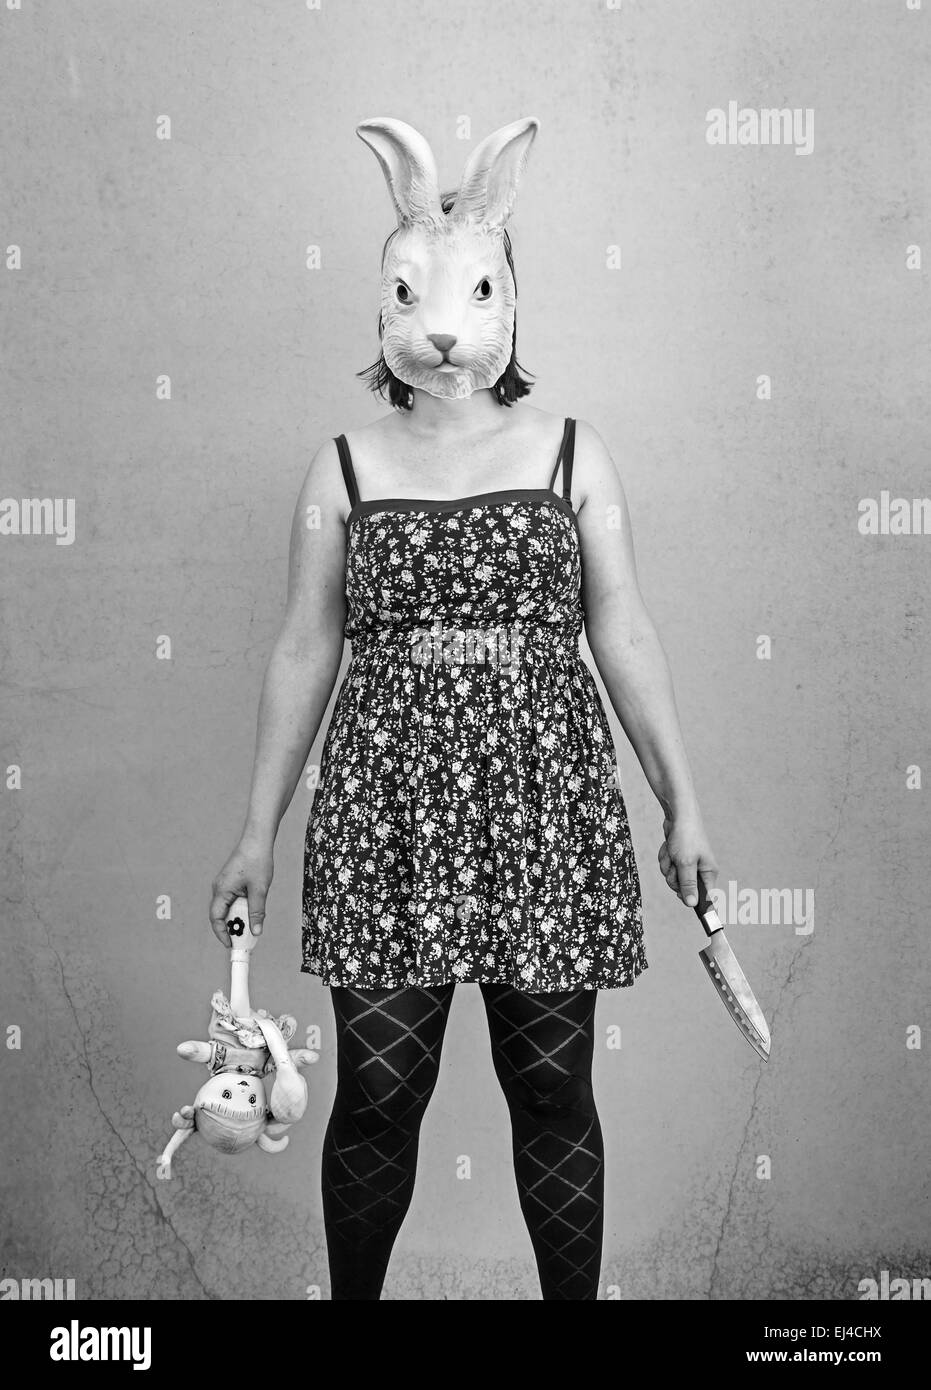 Fille dans halloween masque de lapin, la peur et la terreur Banque D'Images